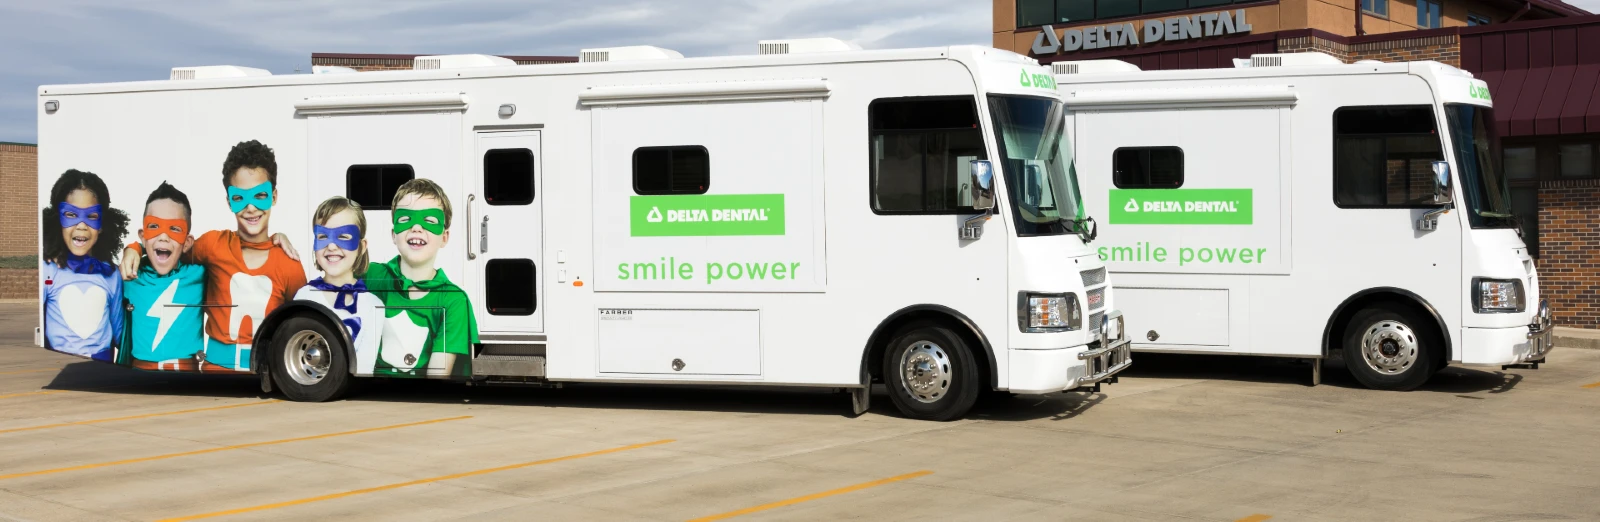 mobile dental clinic trucks